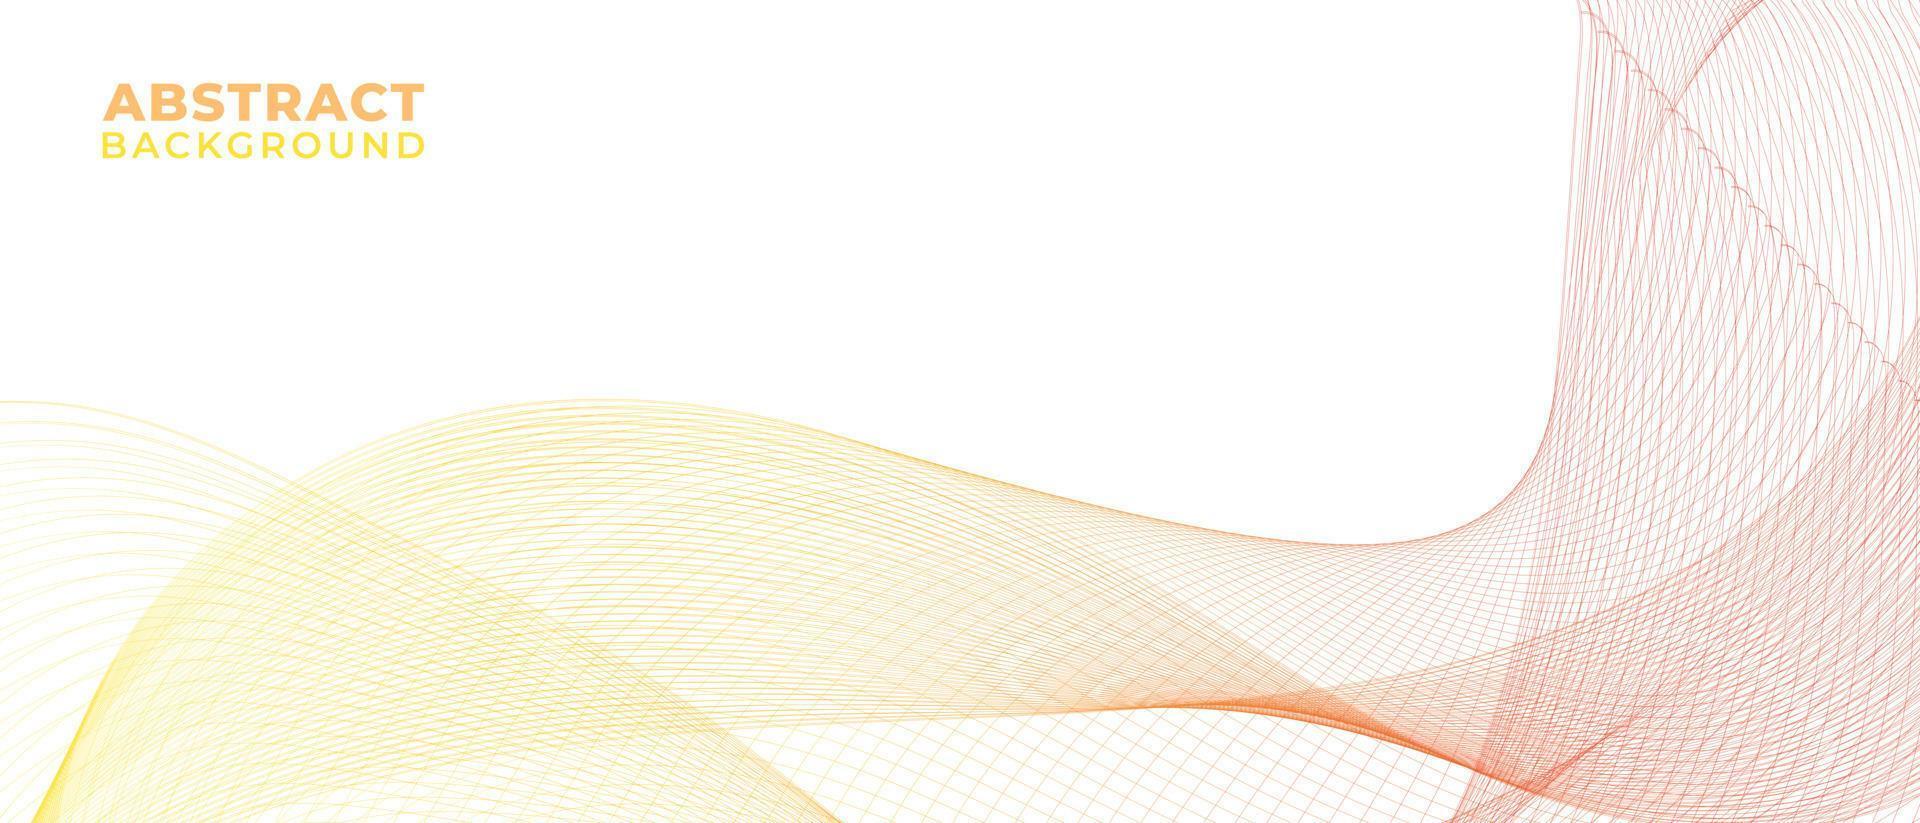 ilustración de diseño de fondo colorido geométrico ondulado abstracto futuro minimalista y moderno vector